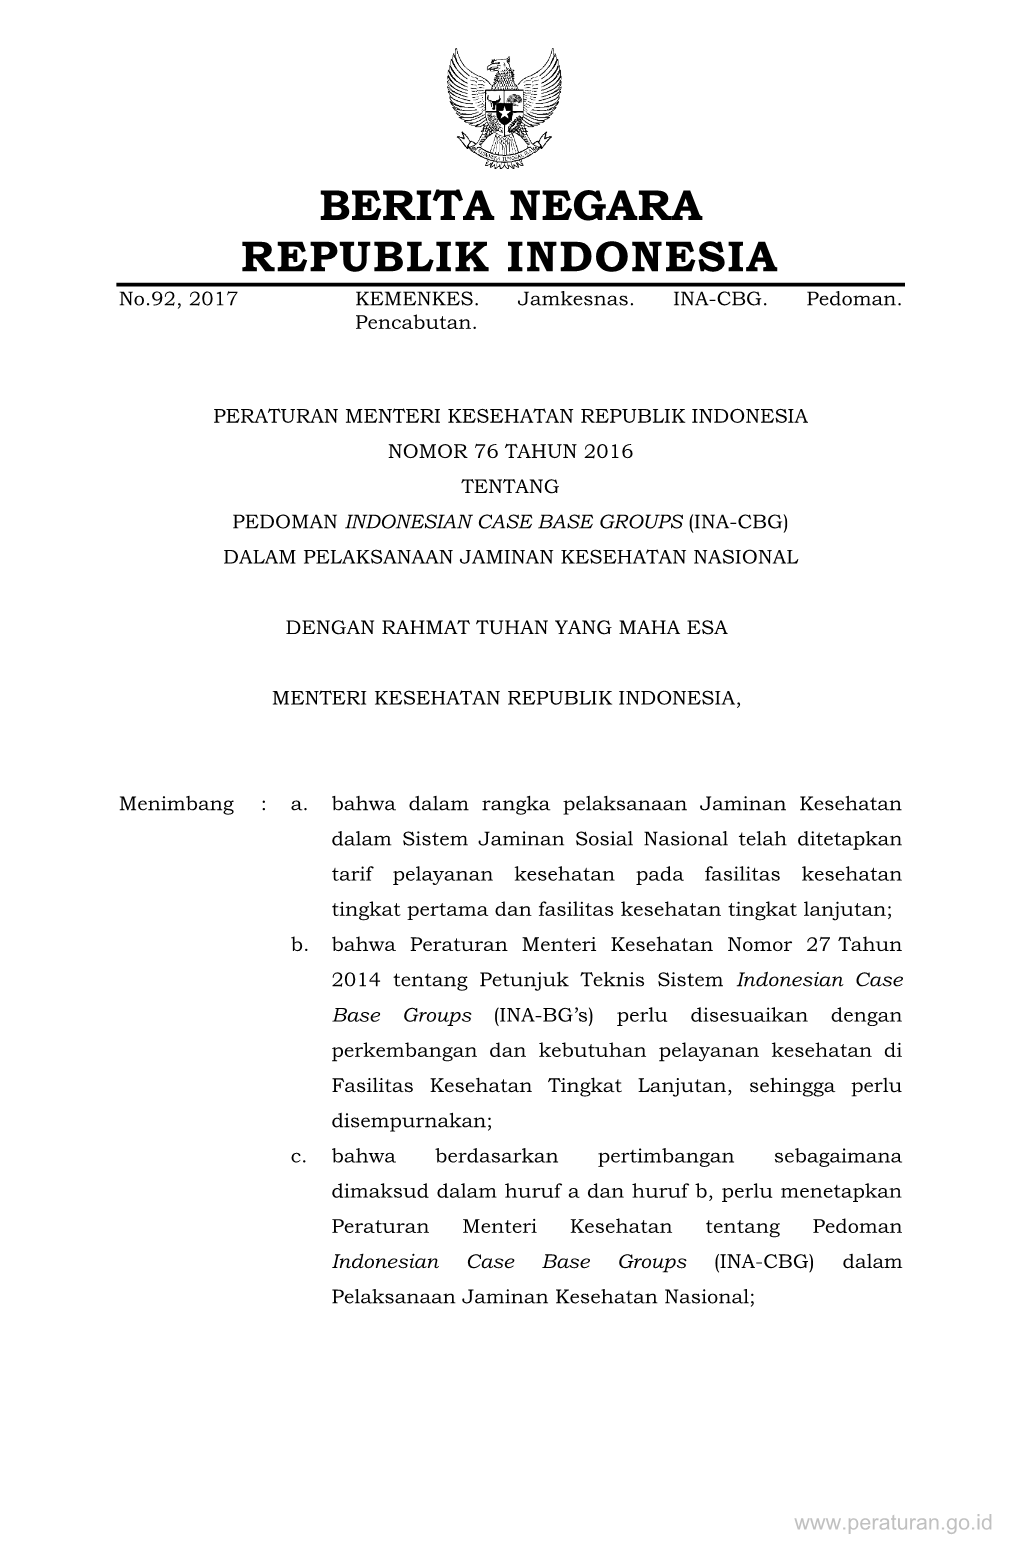 Peraturan Menteri Kesehatan Republik Indonesia Nomor 76 Tahun 2016 Tentang Pedoman Indonesian Case Base Groups (Ina-Cbg) Dalam Pelaksanaan Jaminan Kesehatan Nasional